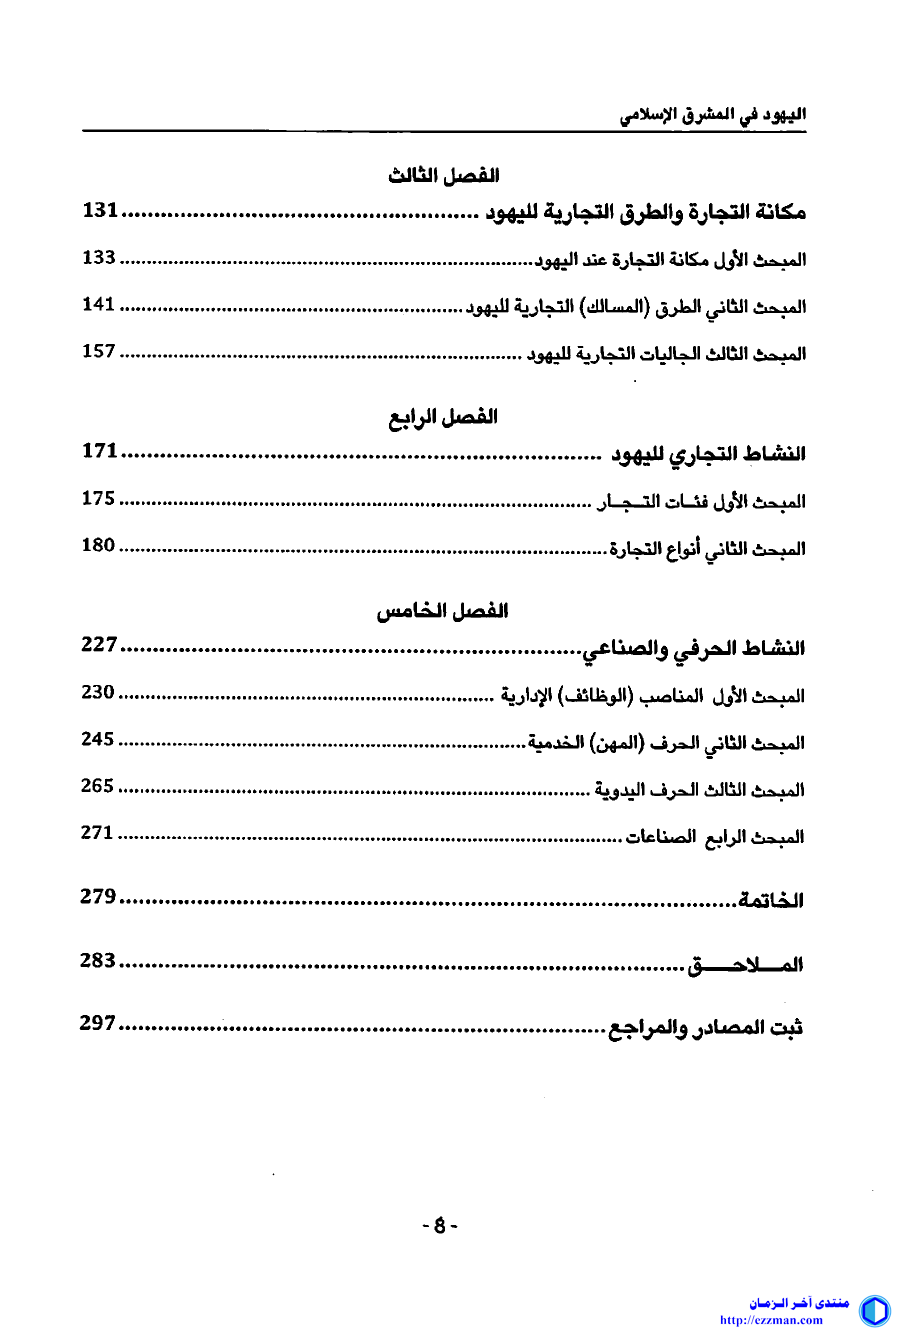 اليهود المشرق الإسلامي 11-933 -1517